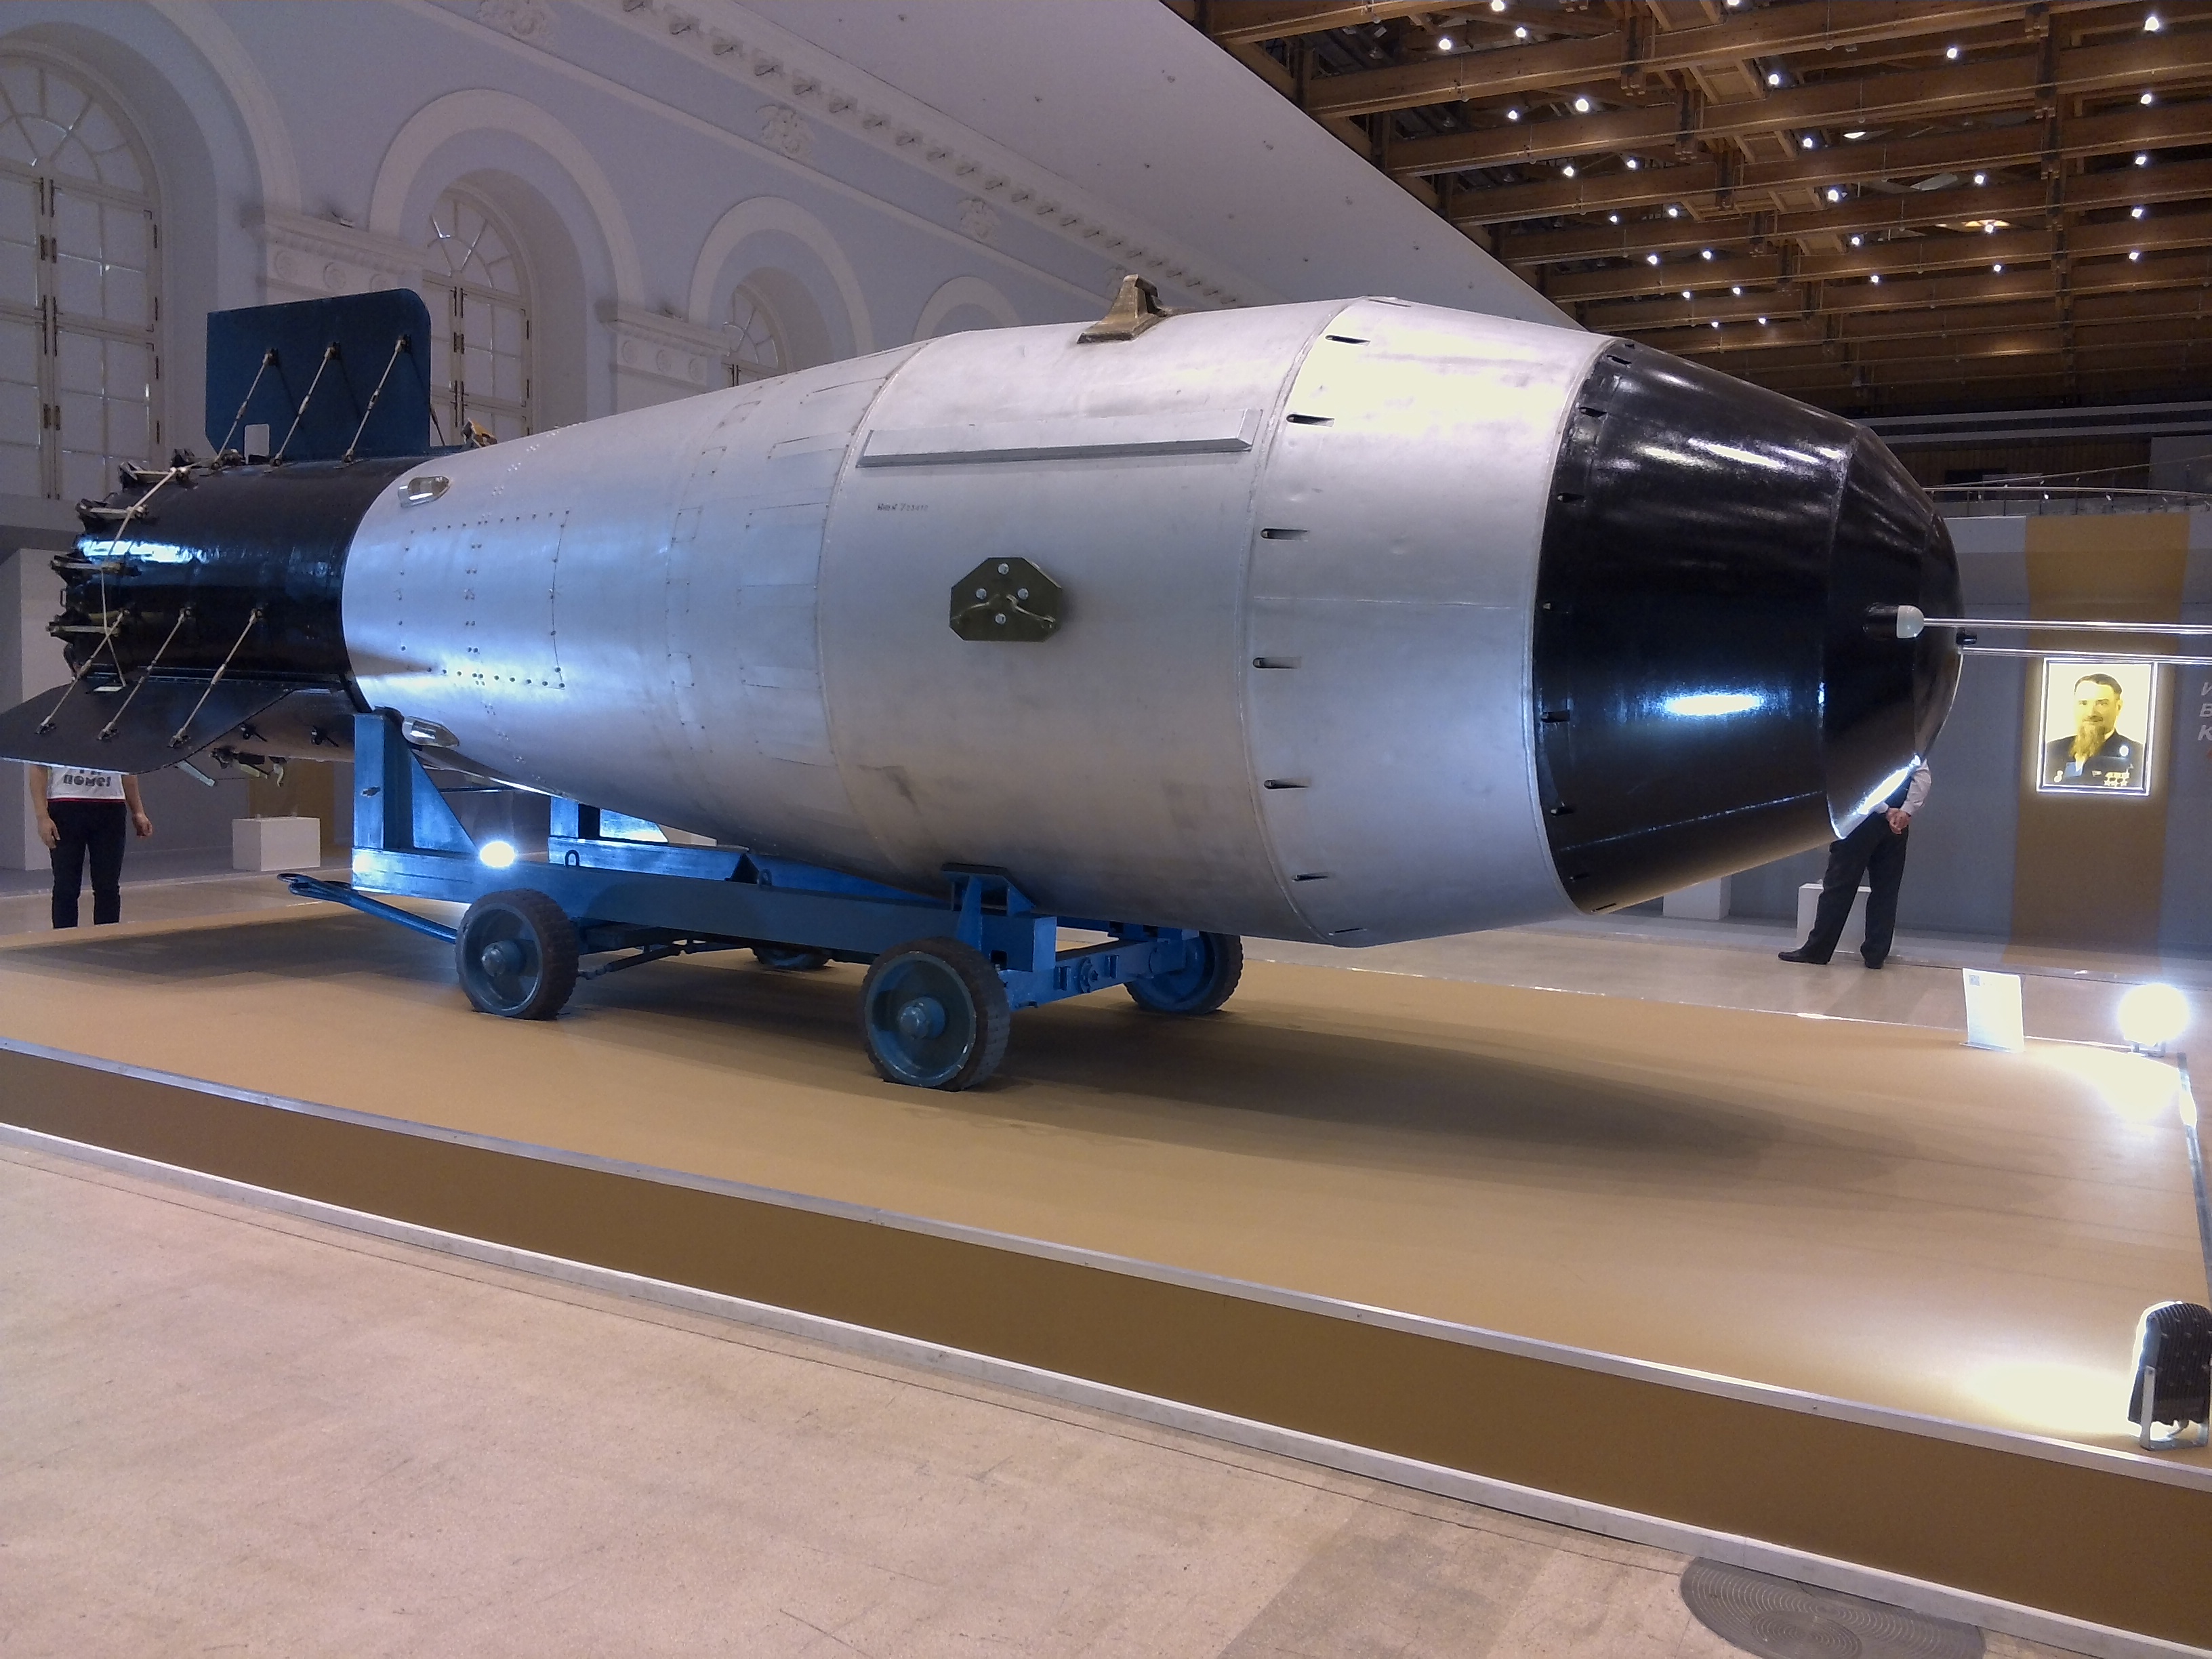 Самая мощная бомба в россии. Ан602 царь-бомба. Царь бомба 100 мегатонн. Ядерная бомба РДС-4. РДС 202 царь бомба.